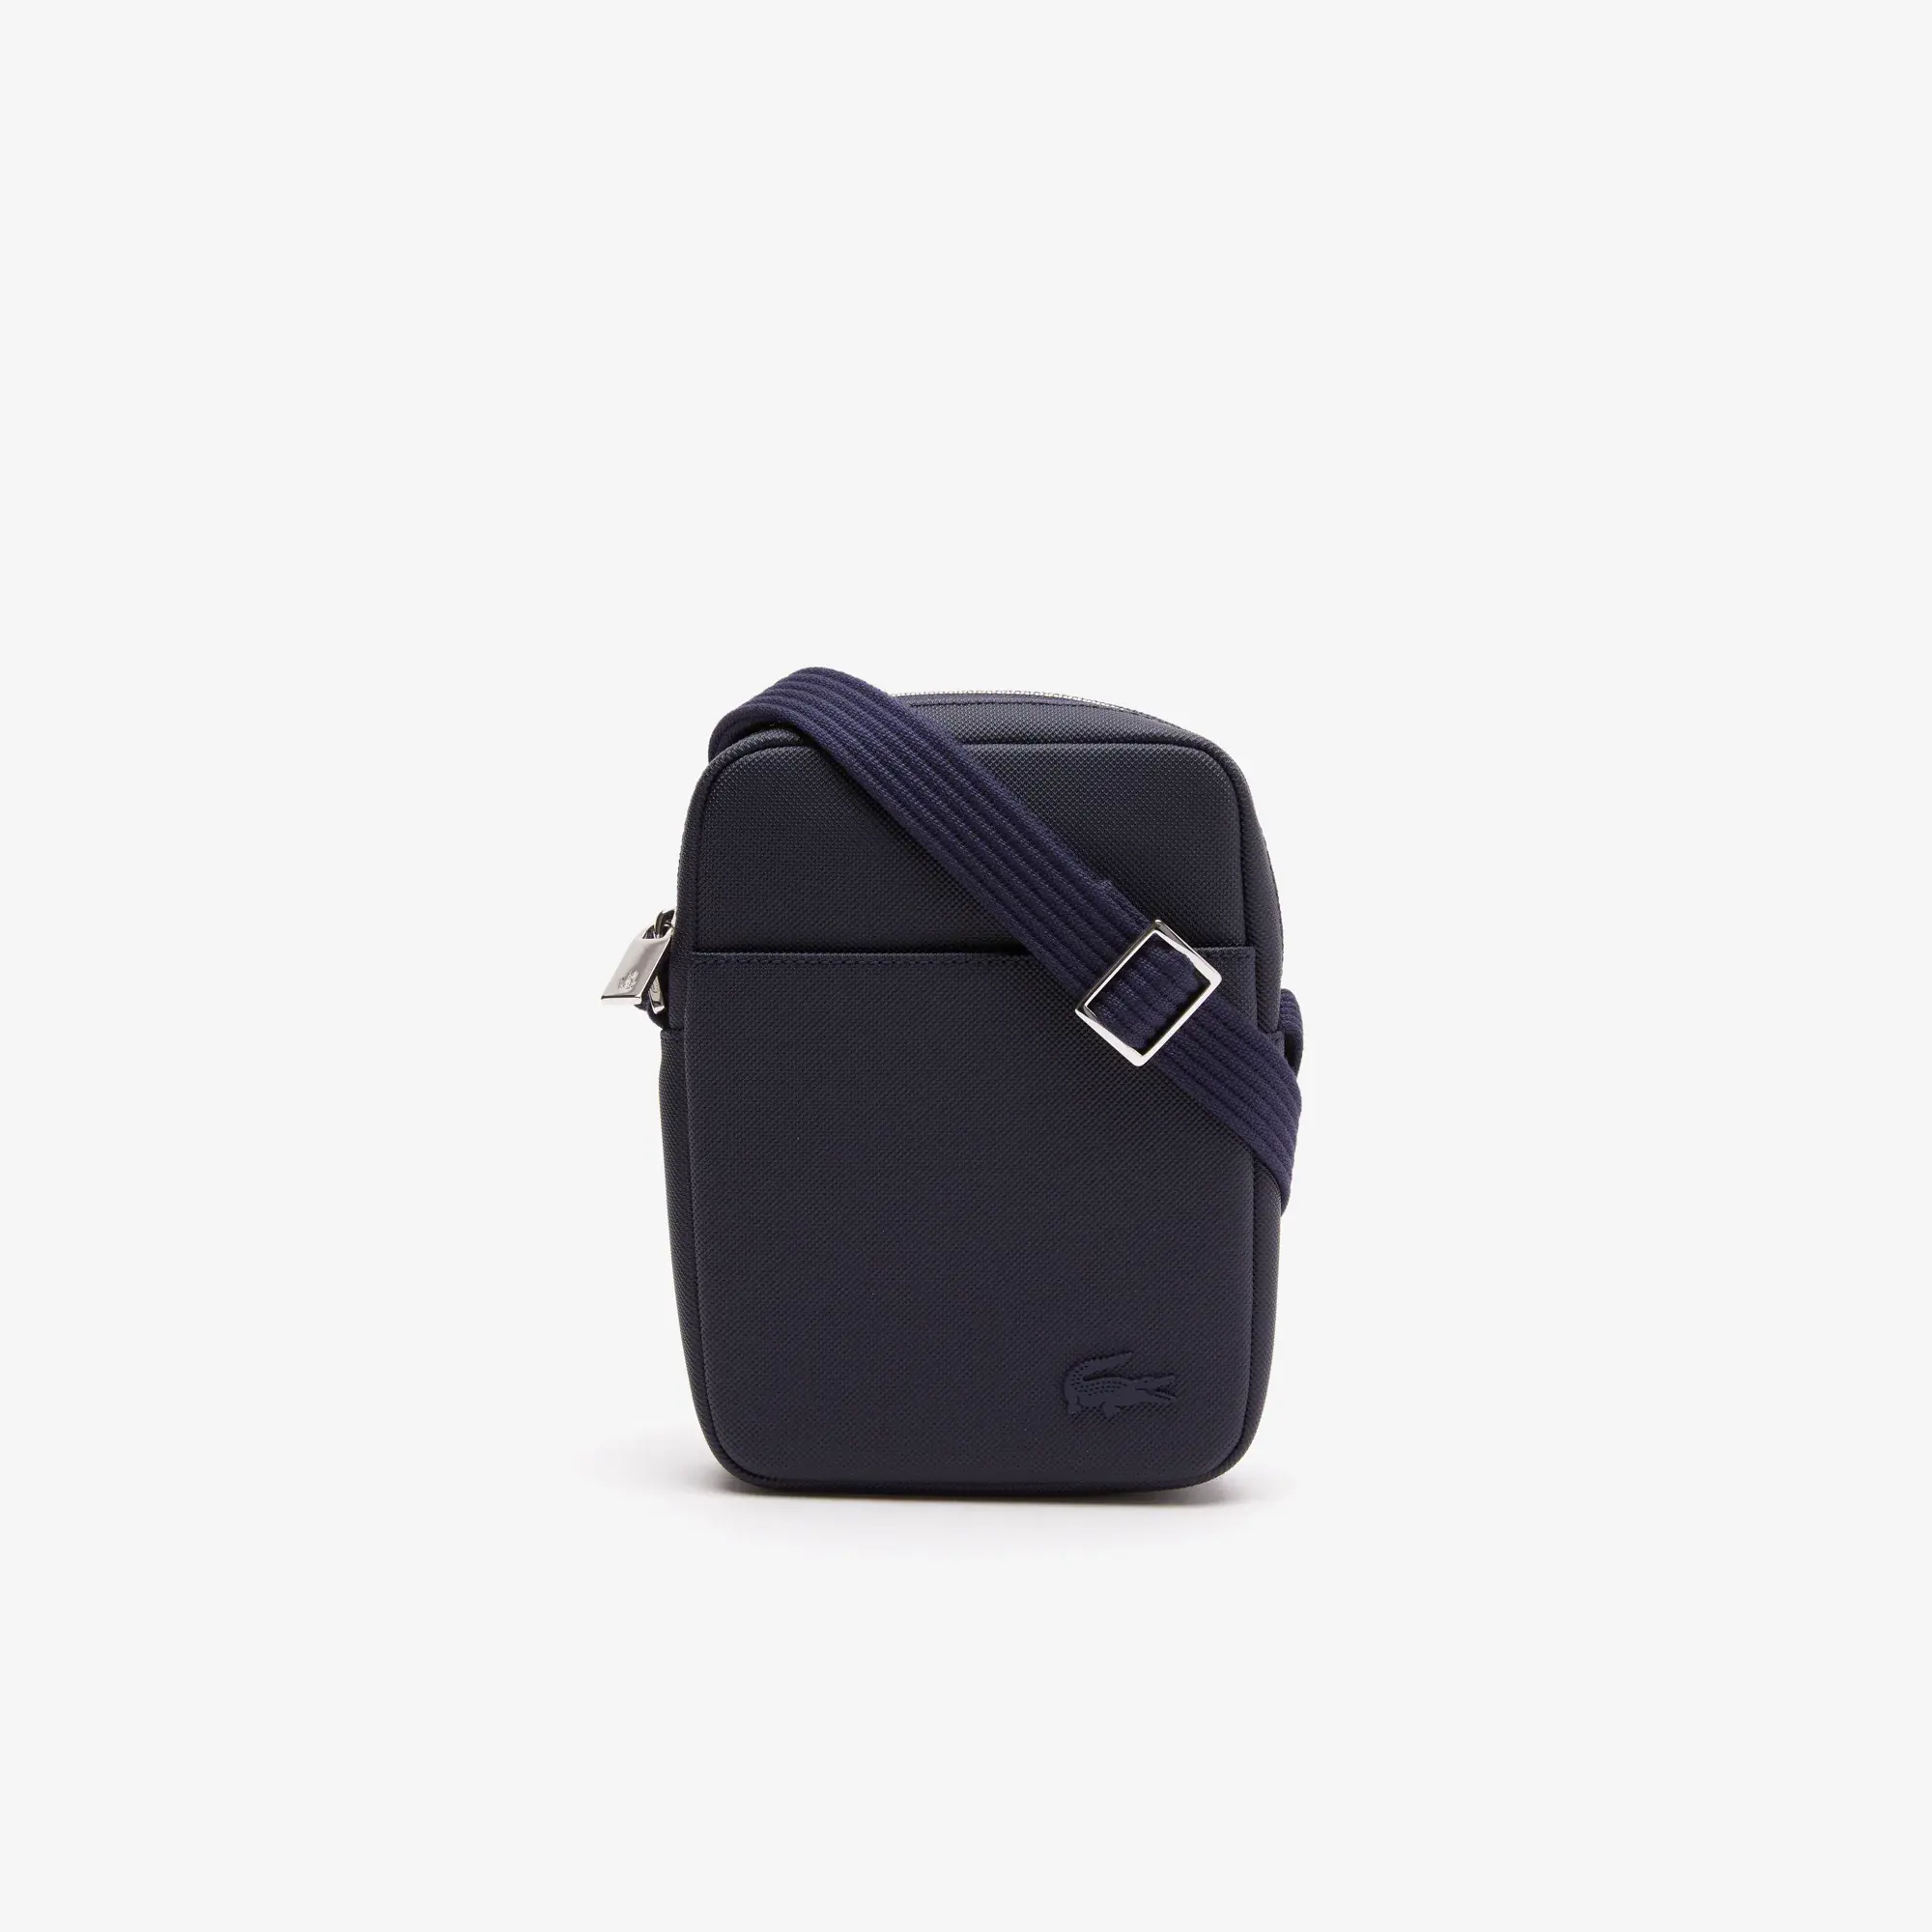 Lacoste Men's Classic Petit Piqué Zip Bag. 2